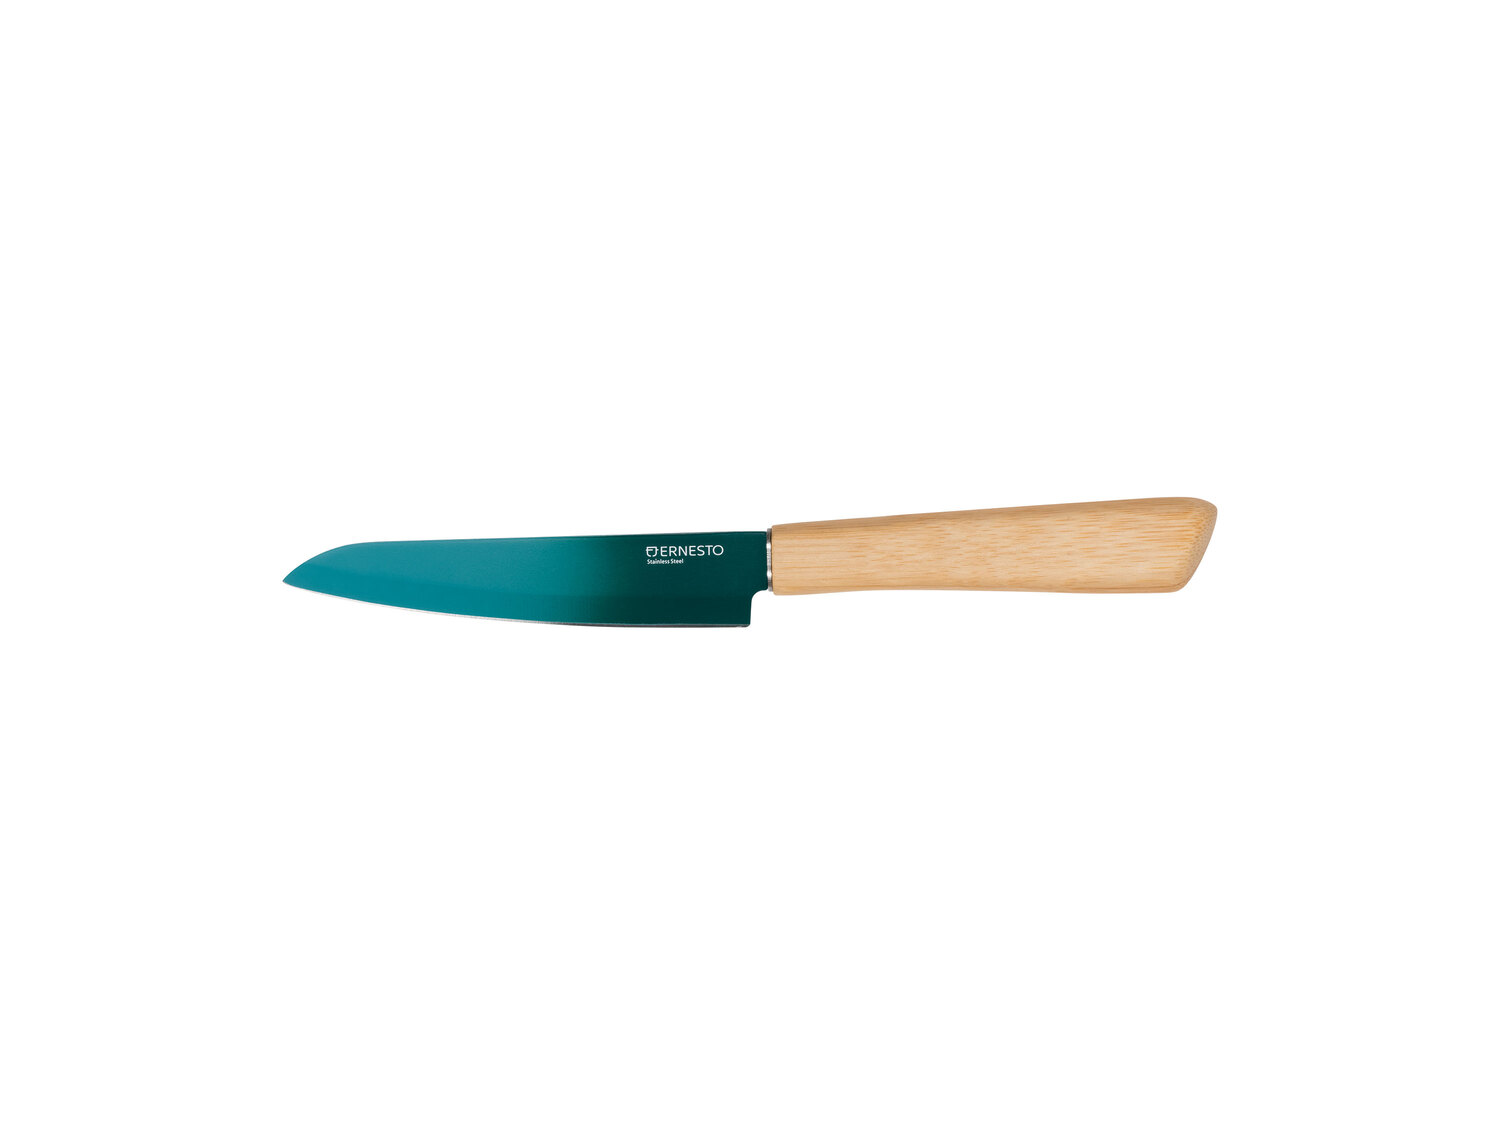 Zestaw noży Ernesto, cena 19,99 PLN 
- bambusowy uchwyt
- dł. ostrza: 12,5 cm
- ...